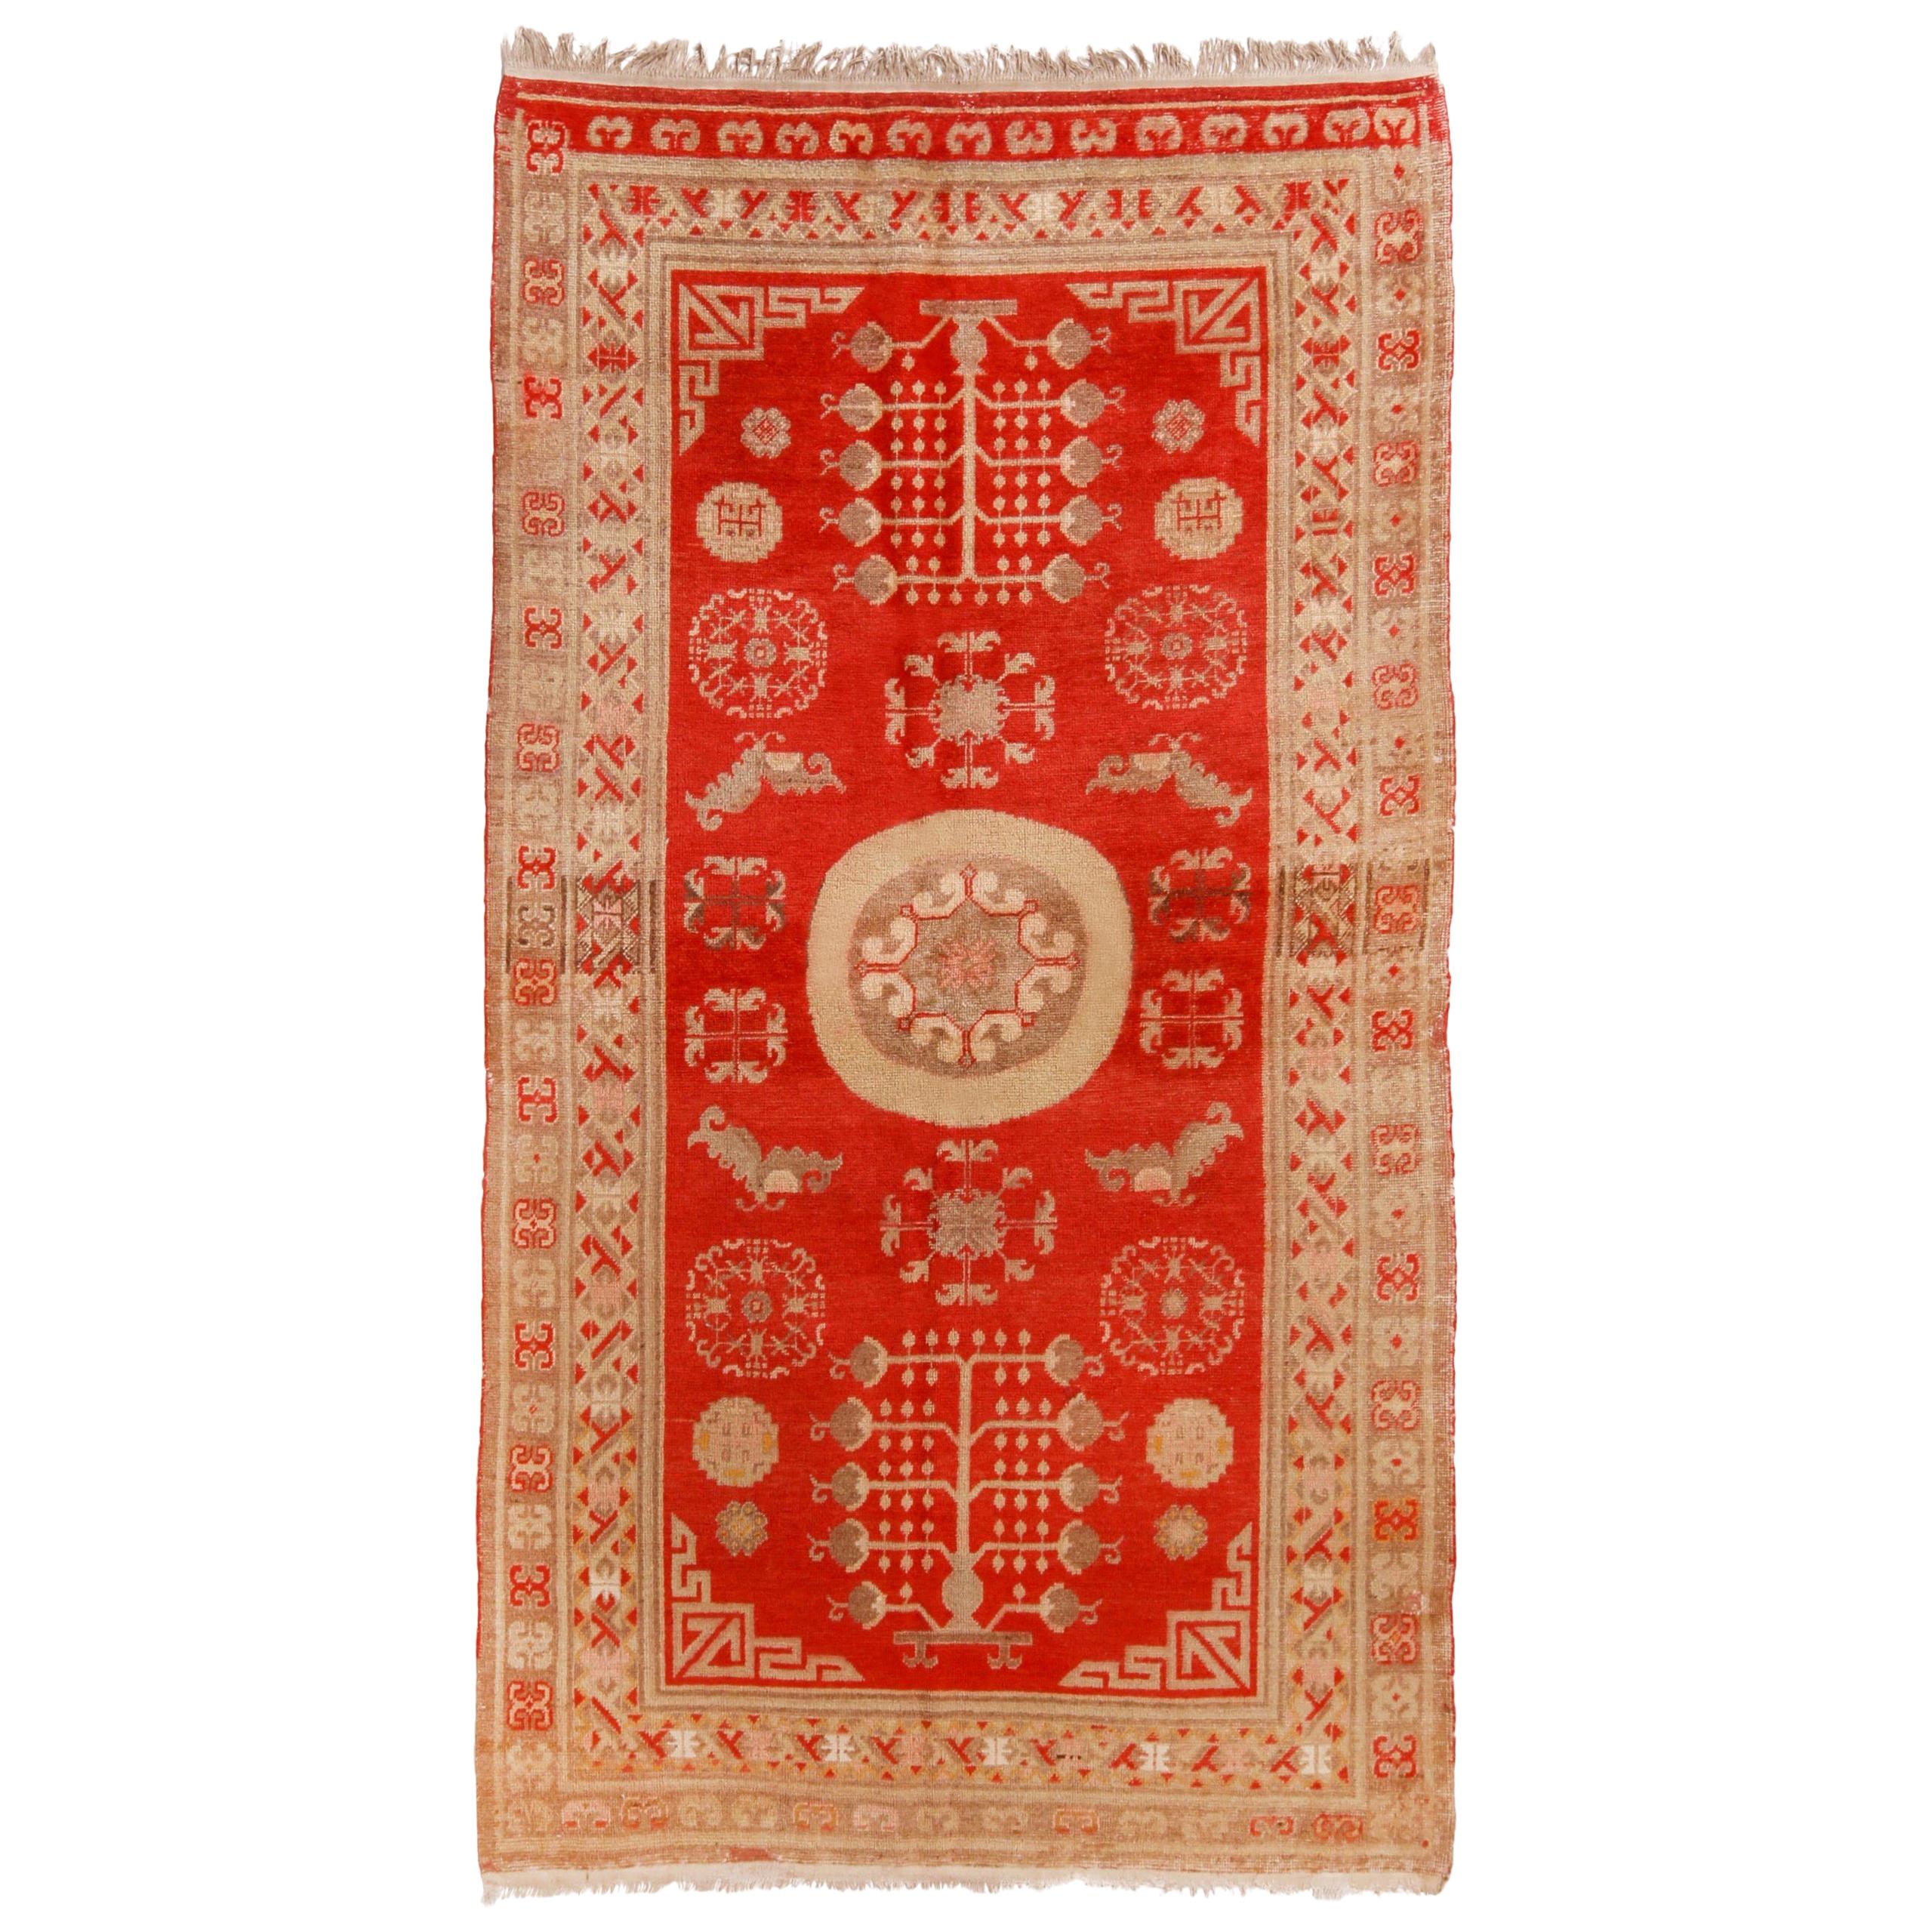 Tapis Khotan ancien en laine rouge et beige transitionnel de style médaillon par Rug & Kilim